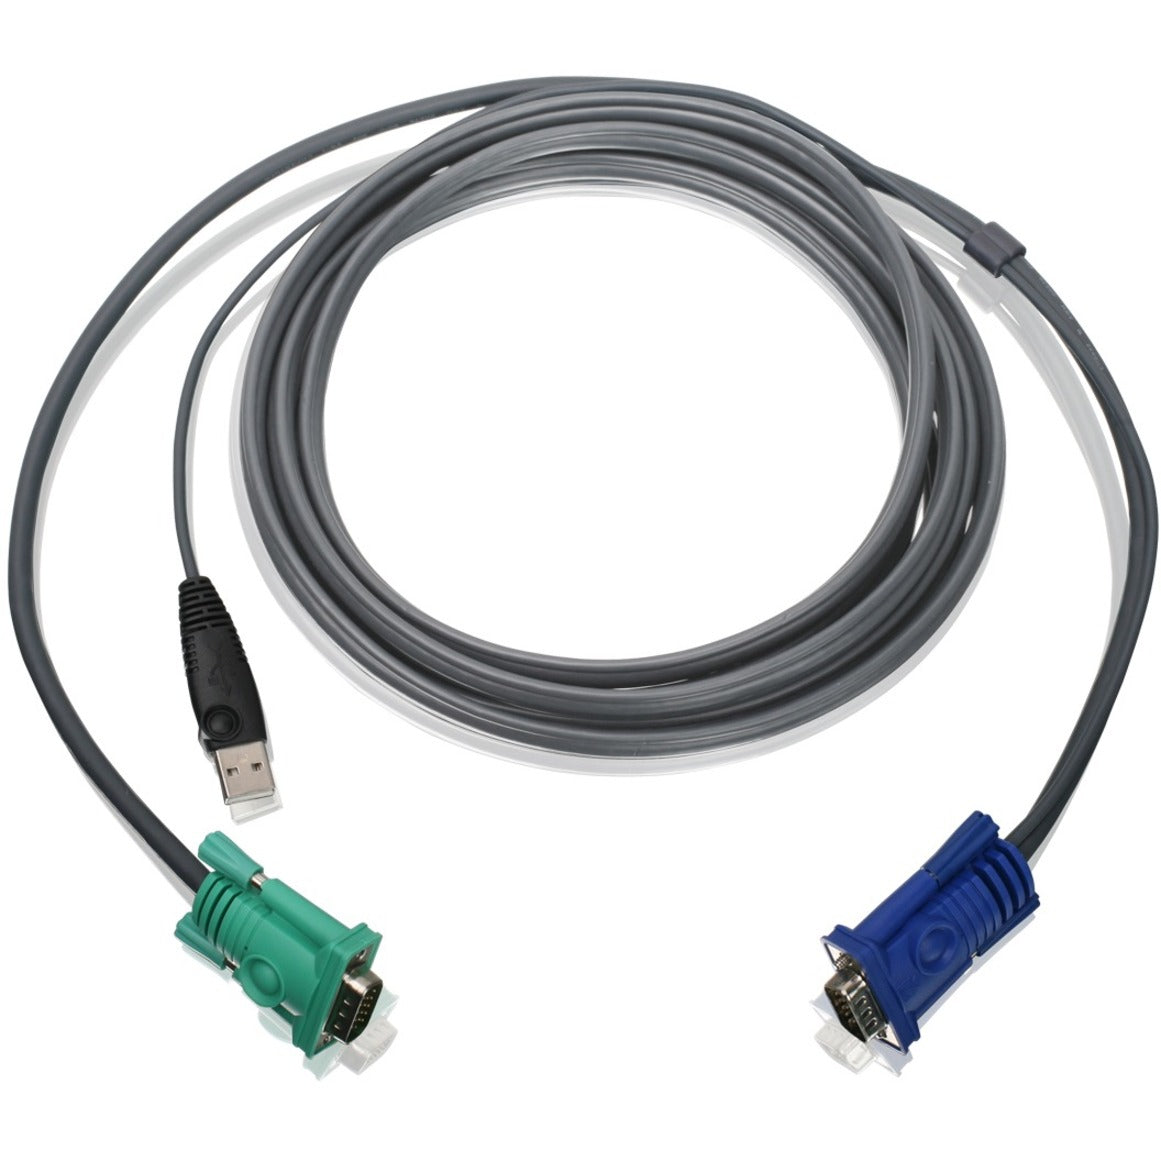 IOGEAR G2L5203U USB KVM Cable 10 Ft, Copper Conductor, 2-way, Dark Gray